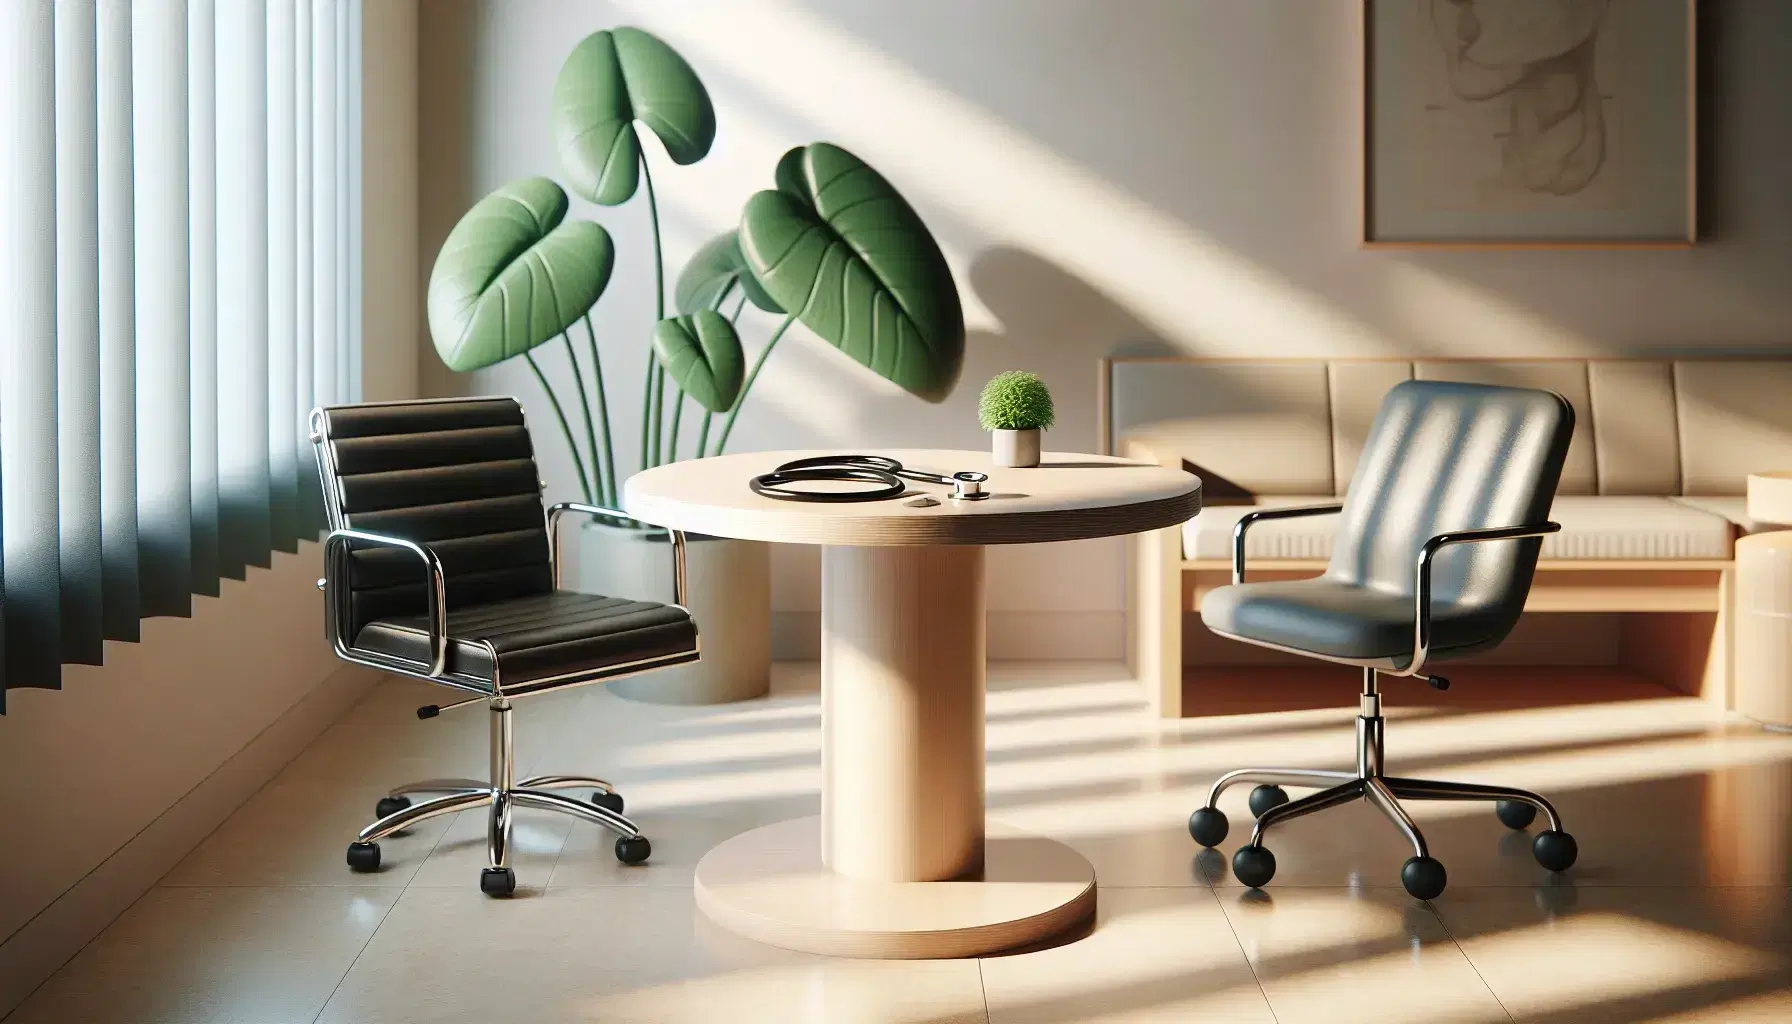 Consultorio médico con mesa de madera, silla giratoria de cuero negro, silla de paciente con cojín azul y planta verde en maceta blanca.